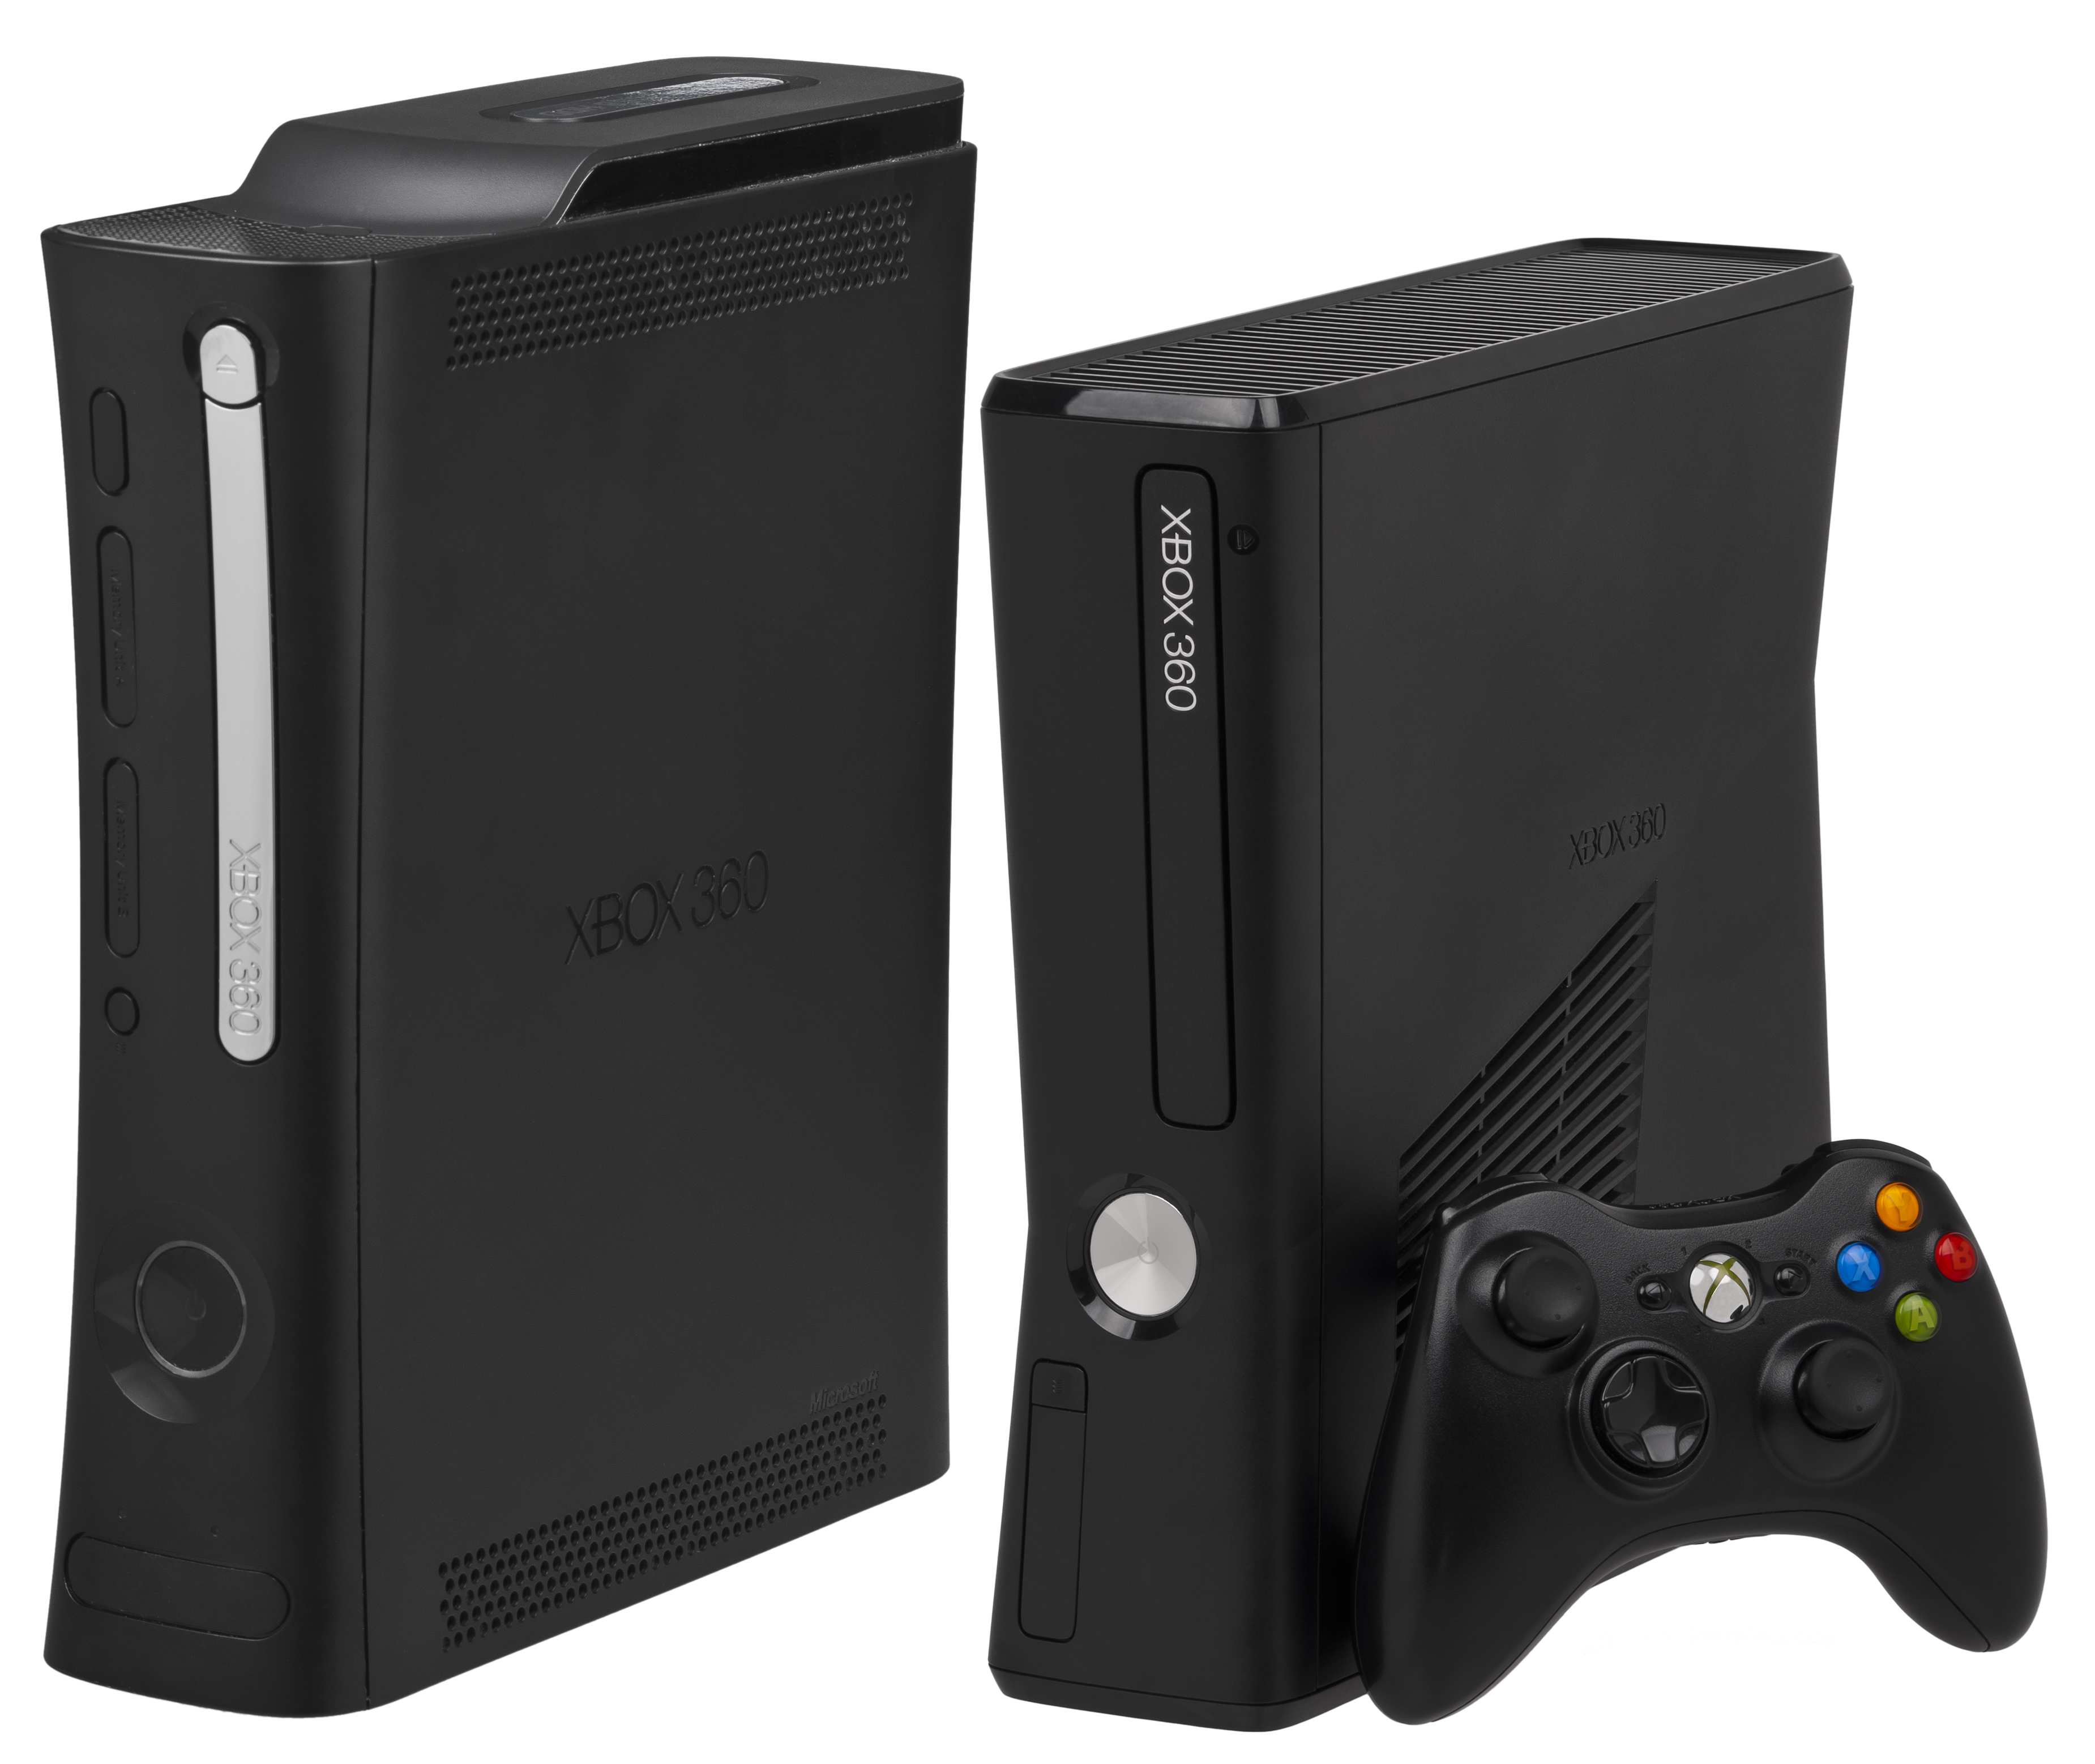 XBox360 Video Juegos Y Consolas consolas de videojuegos 3 